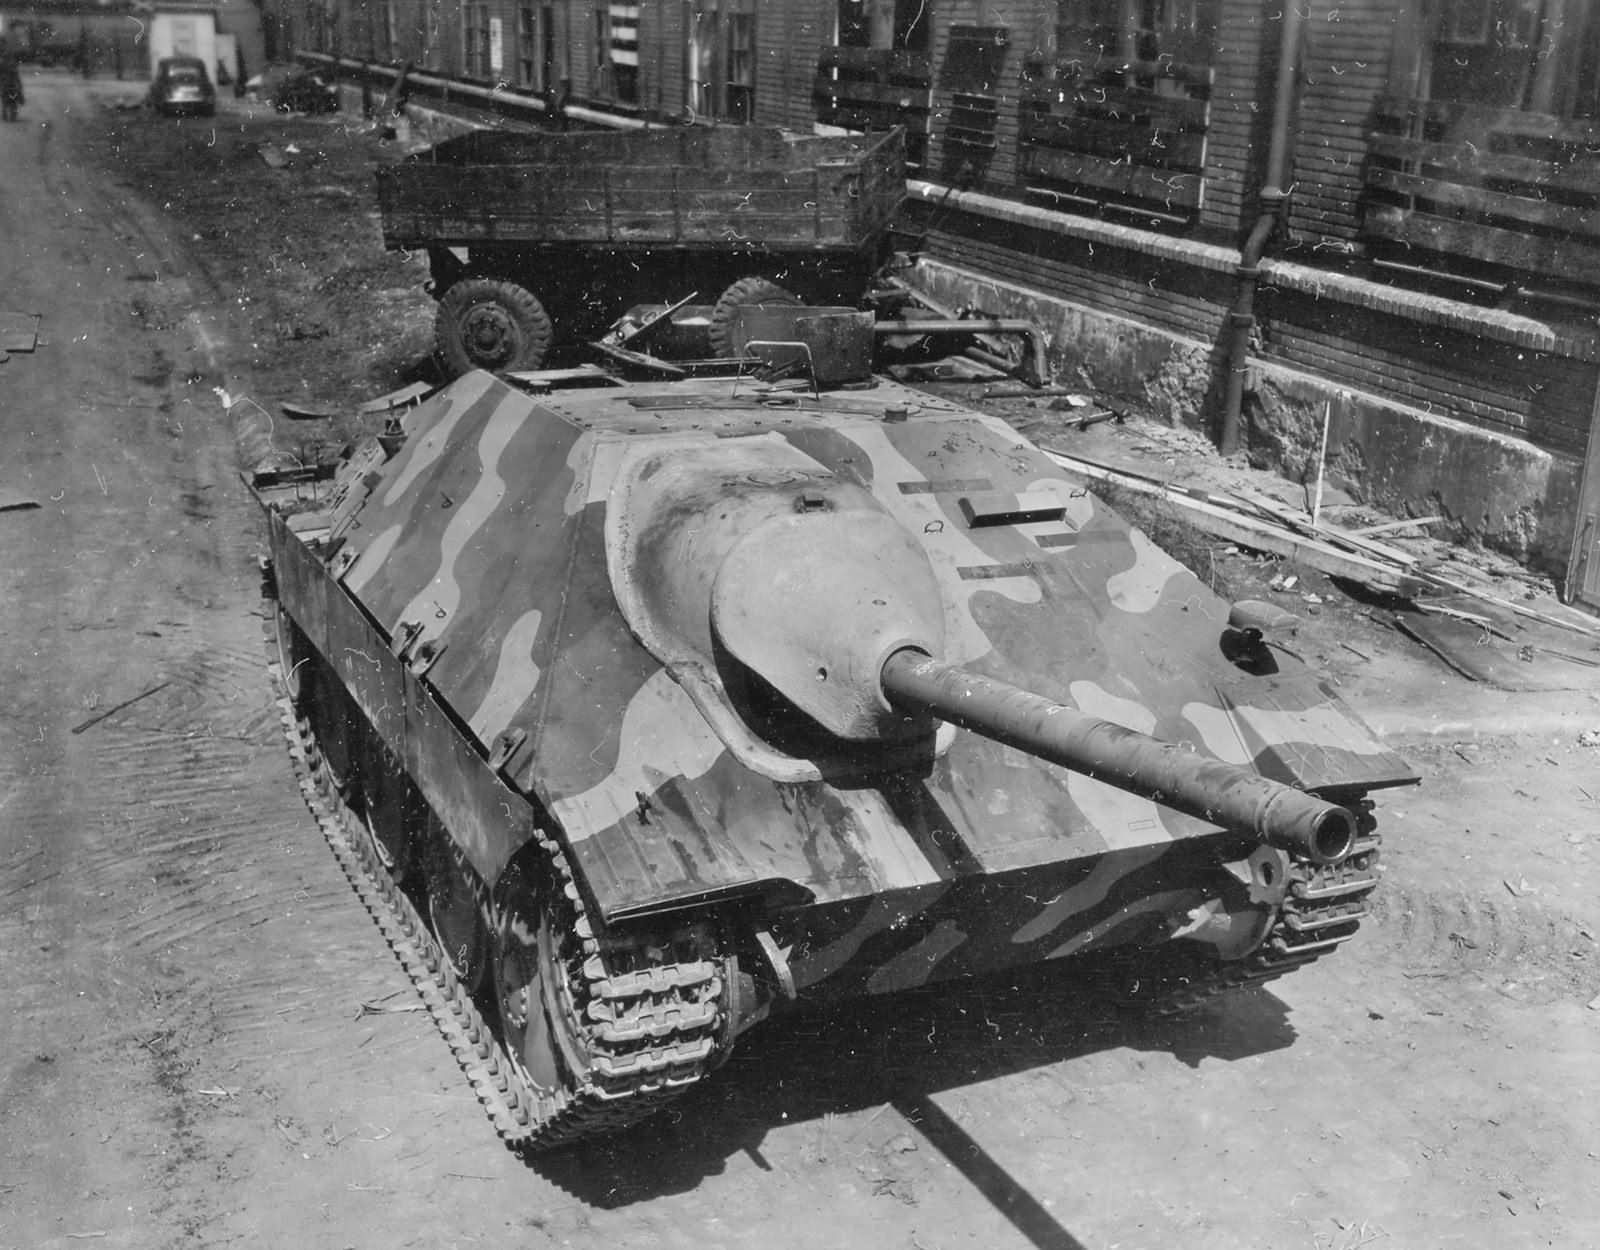 Hetzer_Panzerjager_38t_Found_at_Skoda_Works_Factory_Pilsen_Czechoslovakia.jpg